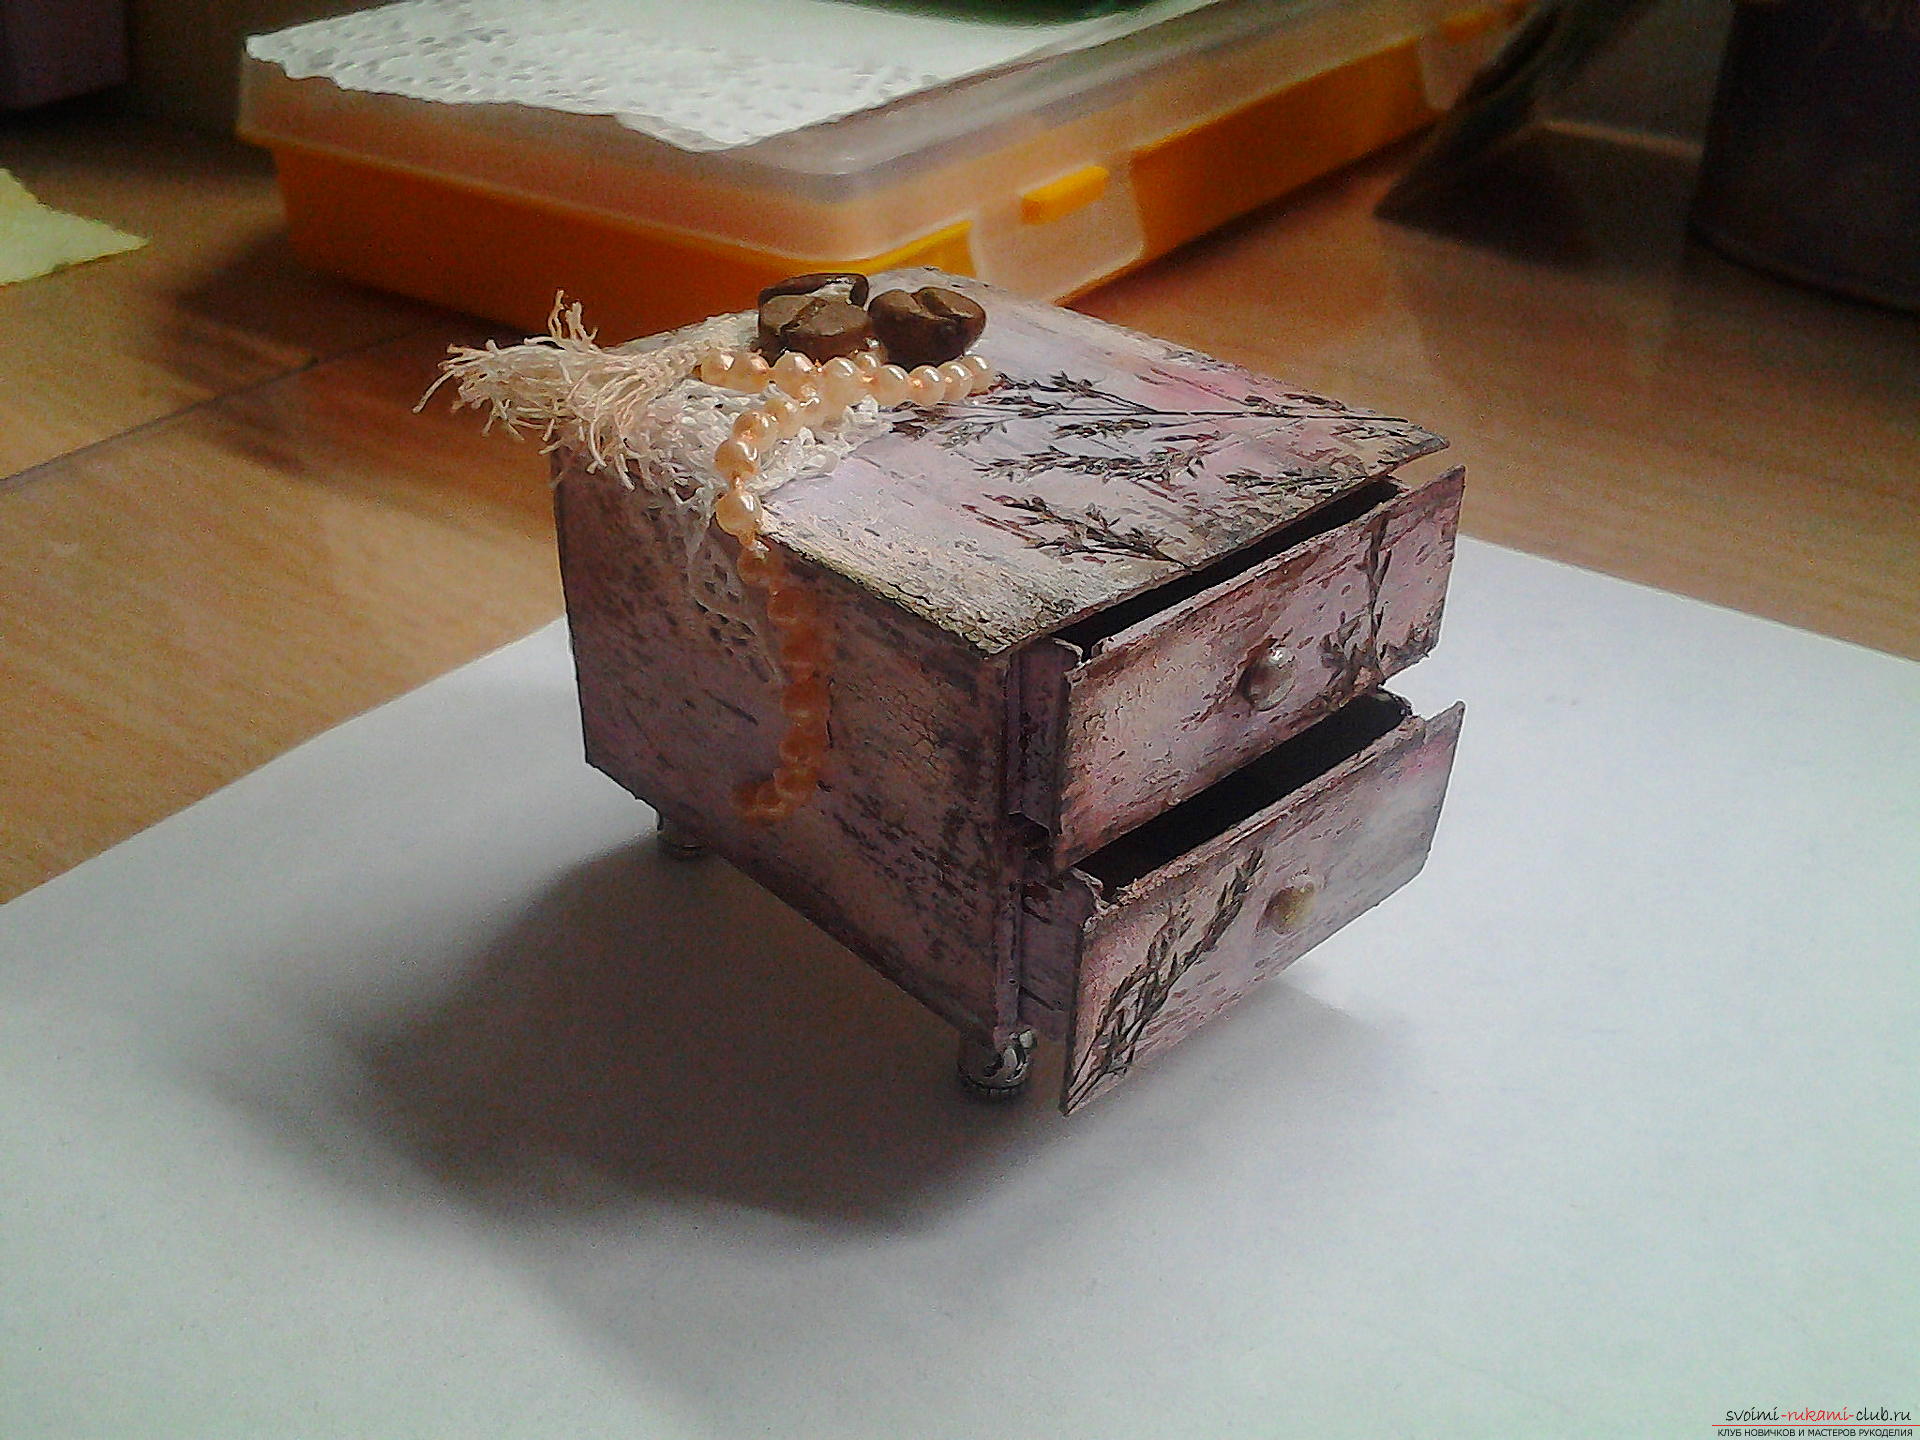 Миниатюрная шкатулка из спичечных коробков в технике декупаж. Фото №1